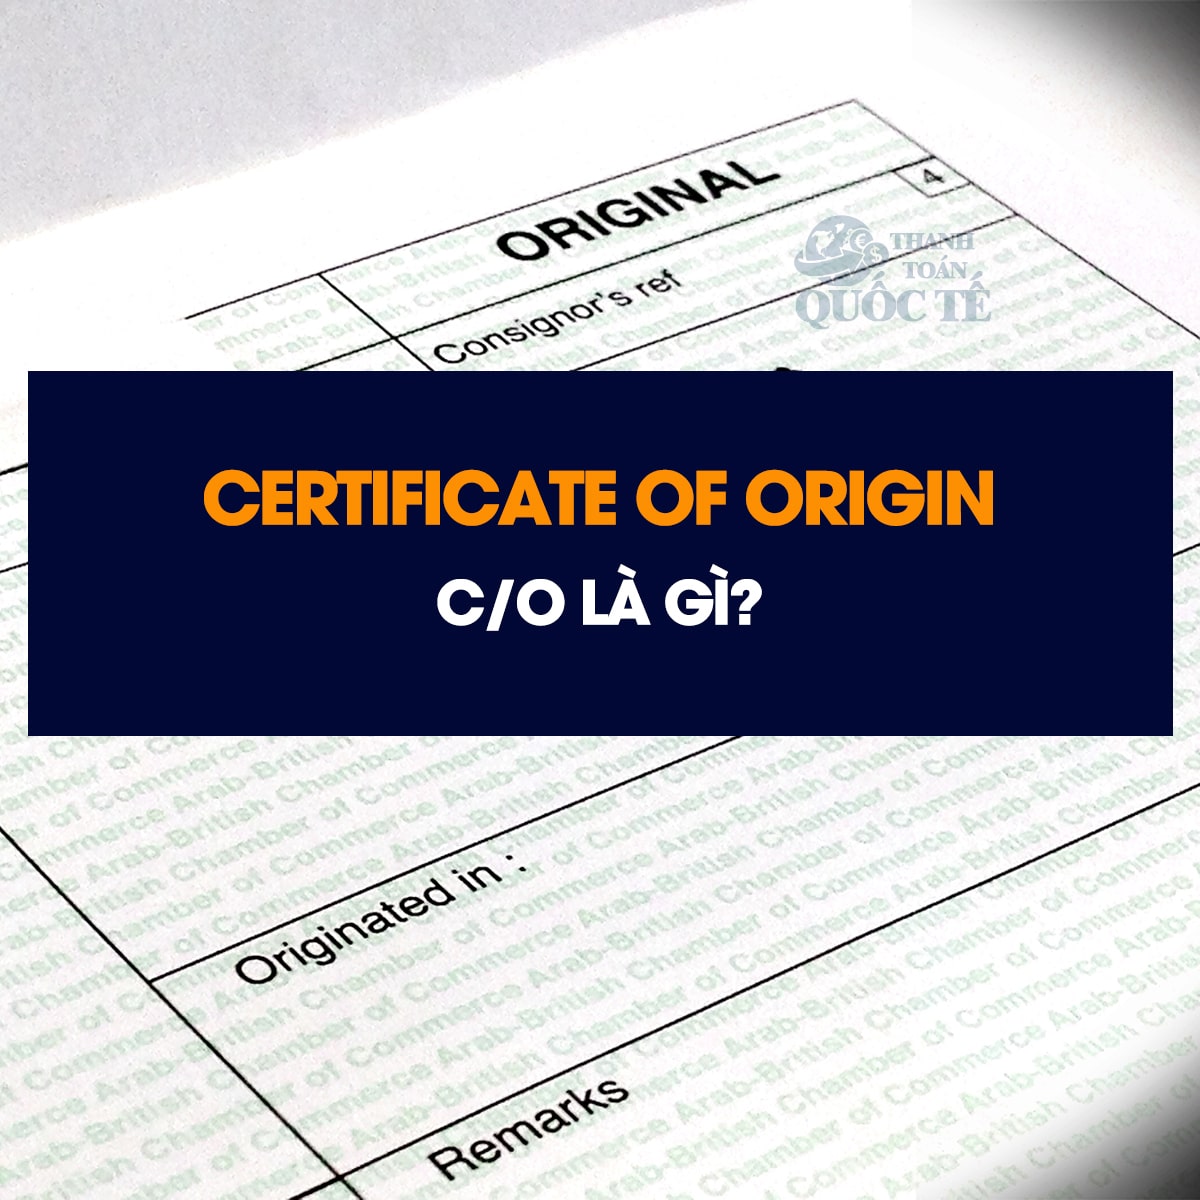 Certificate of Origin - C/O